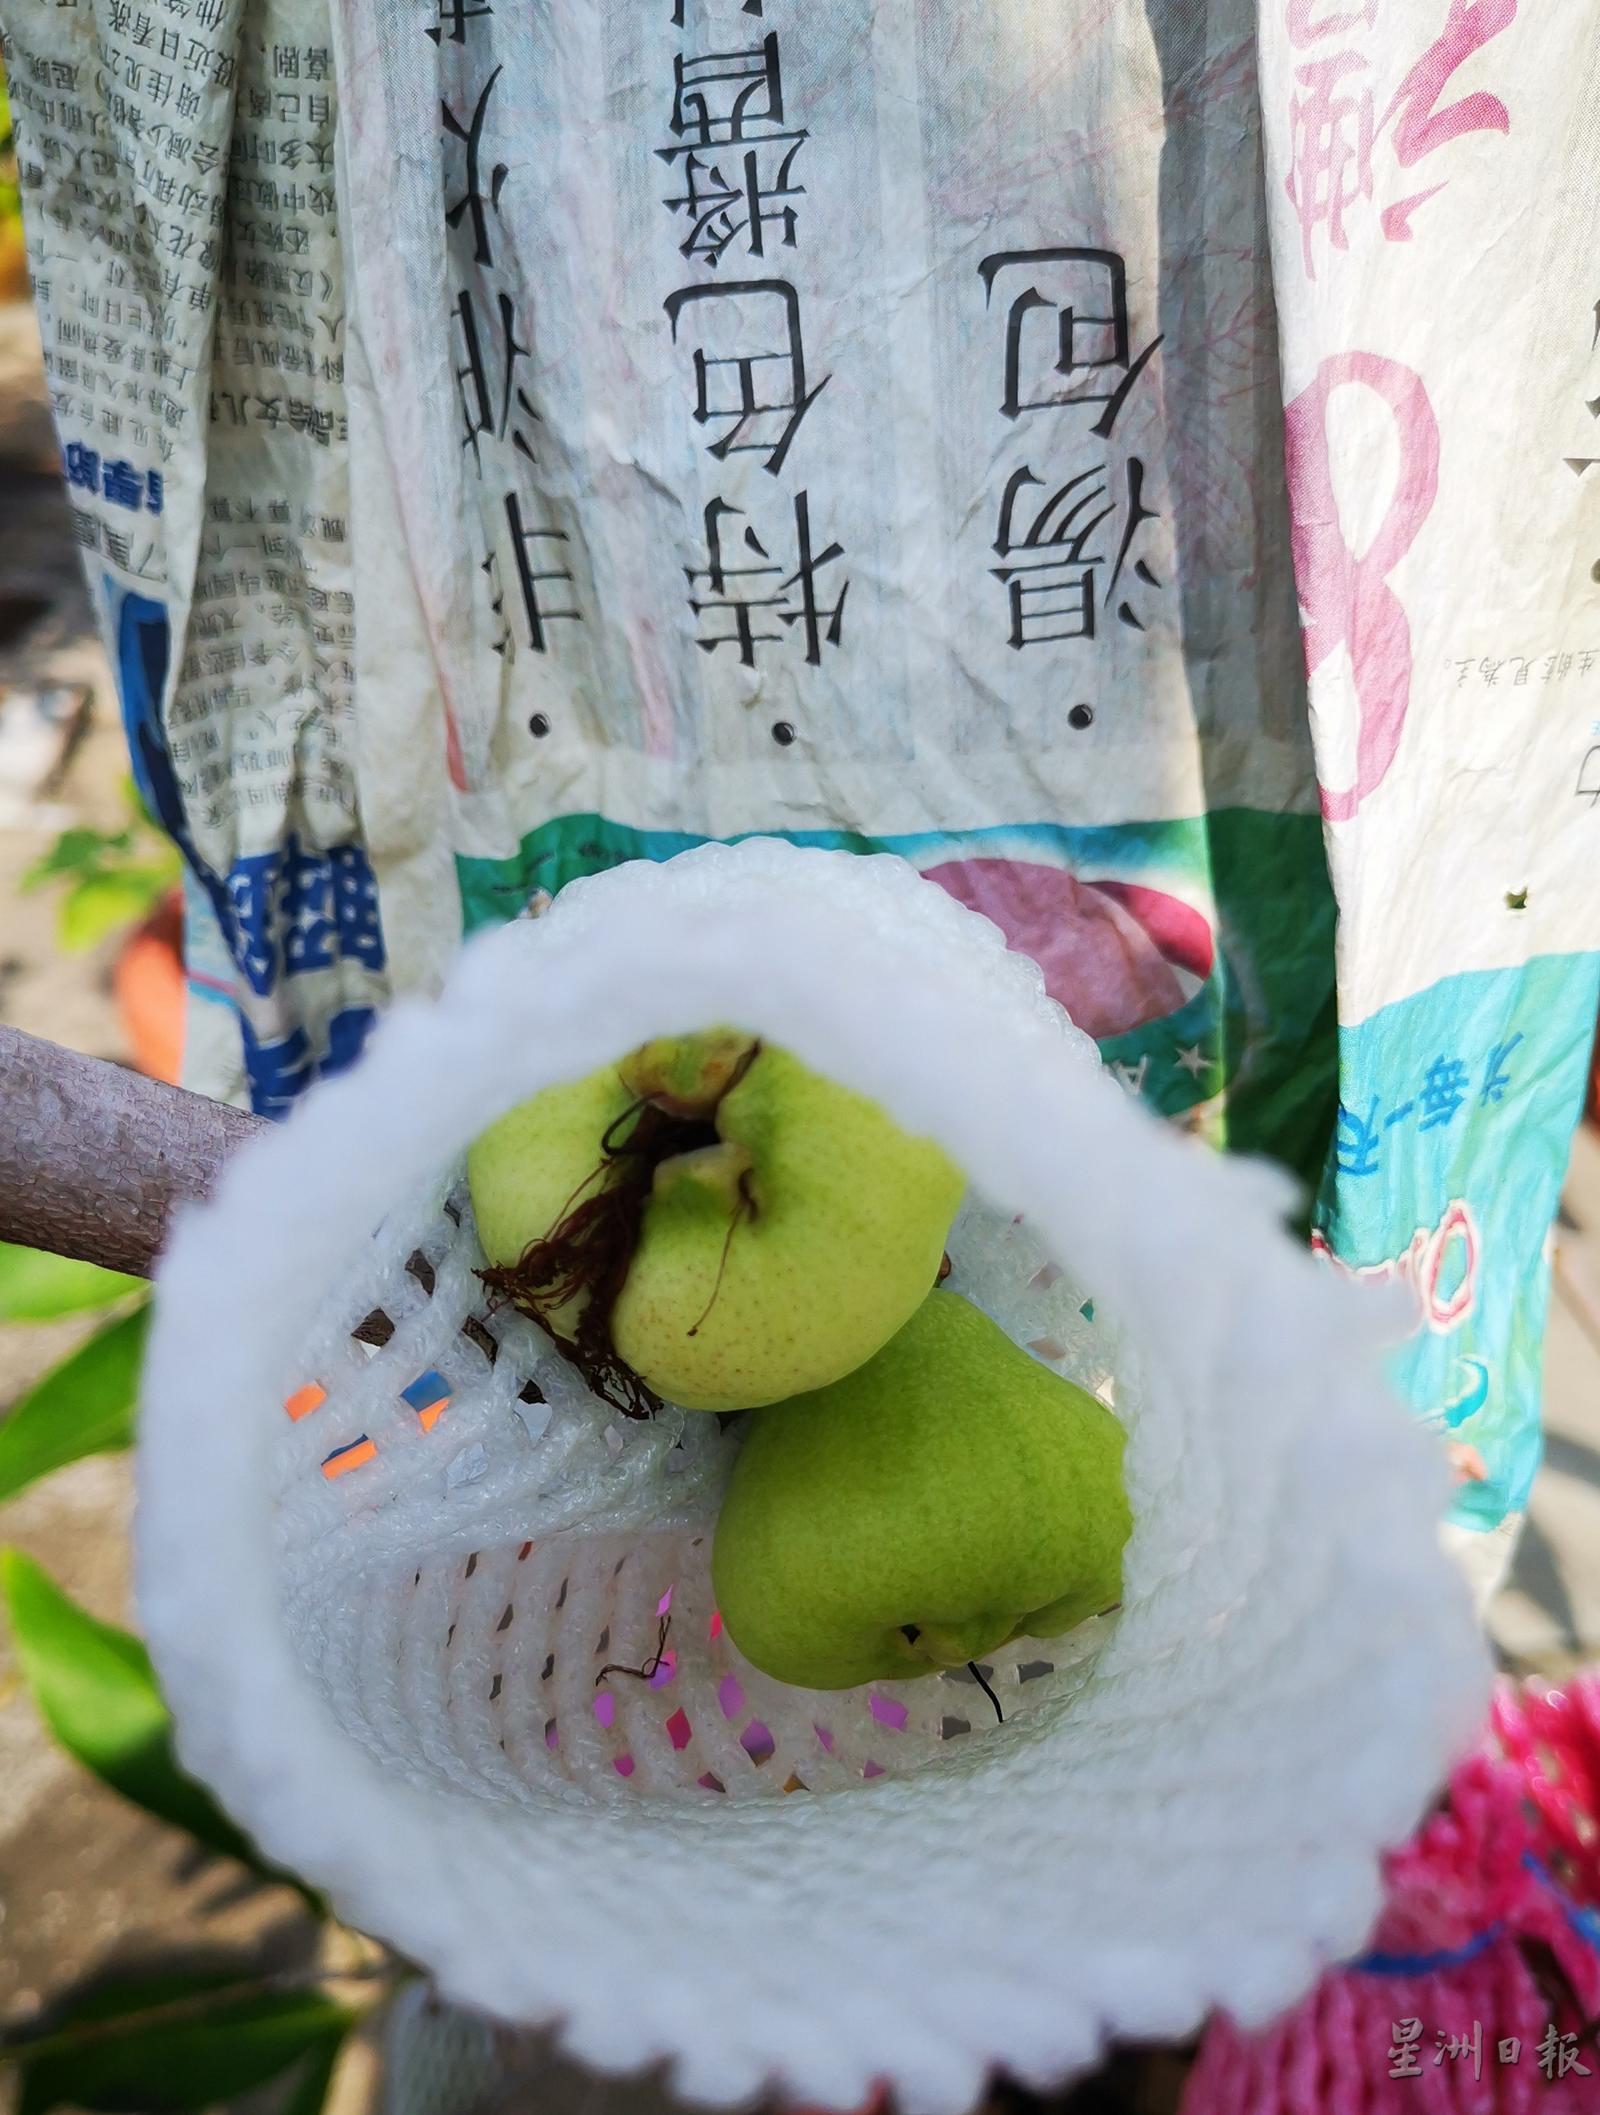 种在花盆的水翁树，长出的果实会比较小。

